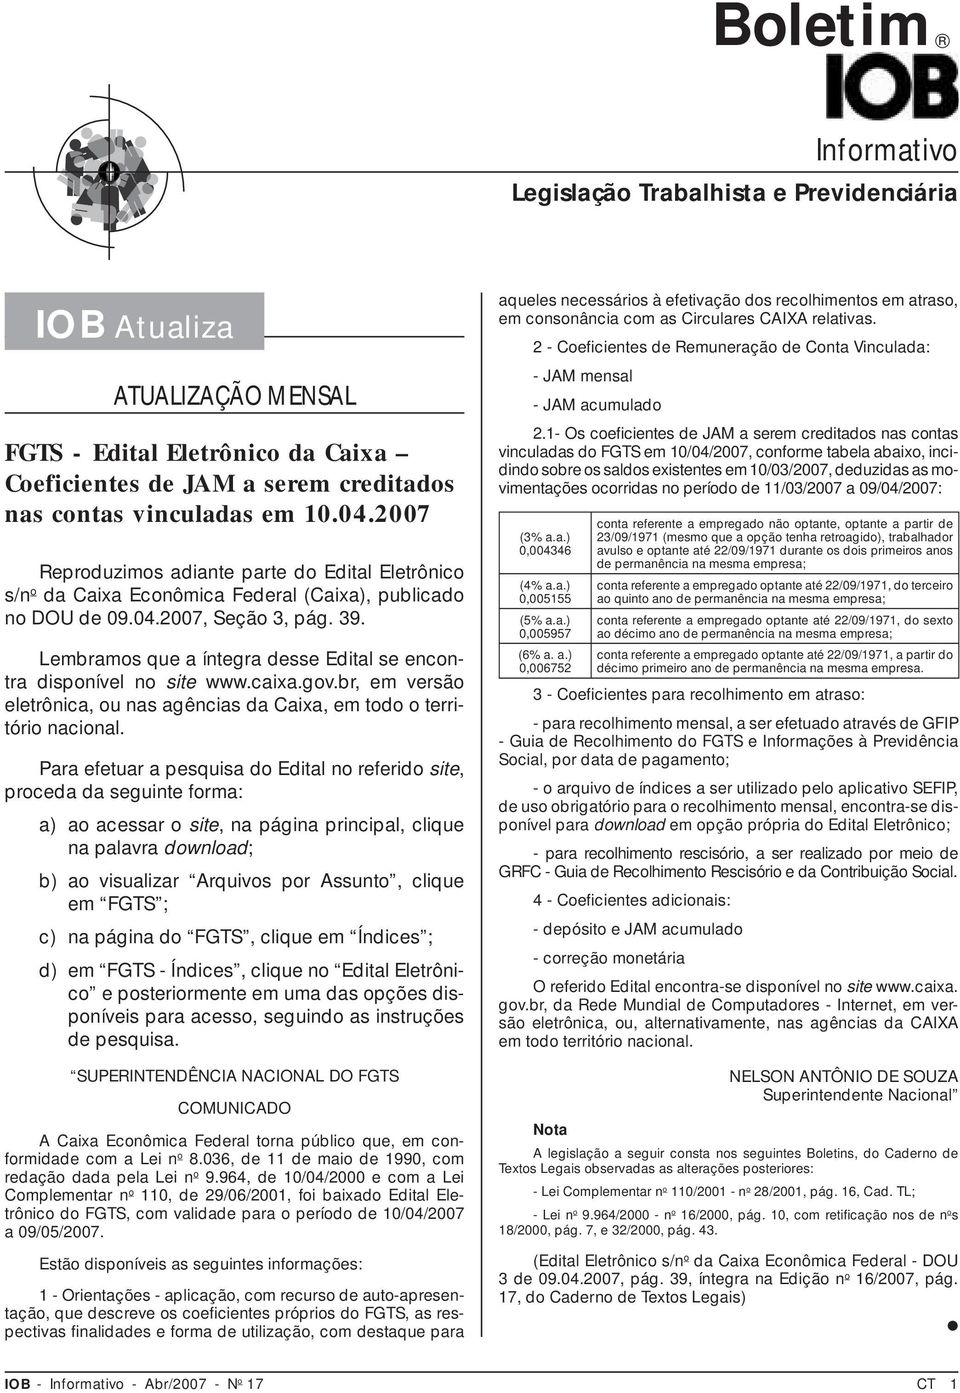 Lembramos que a íntegra desse Edital se encontra disponível no site www.caixa.gov.br, em versão eletrônica, ou nas agências da Caixa, em todo o território nacional.